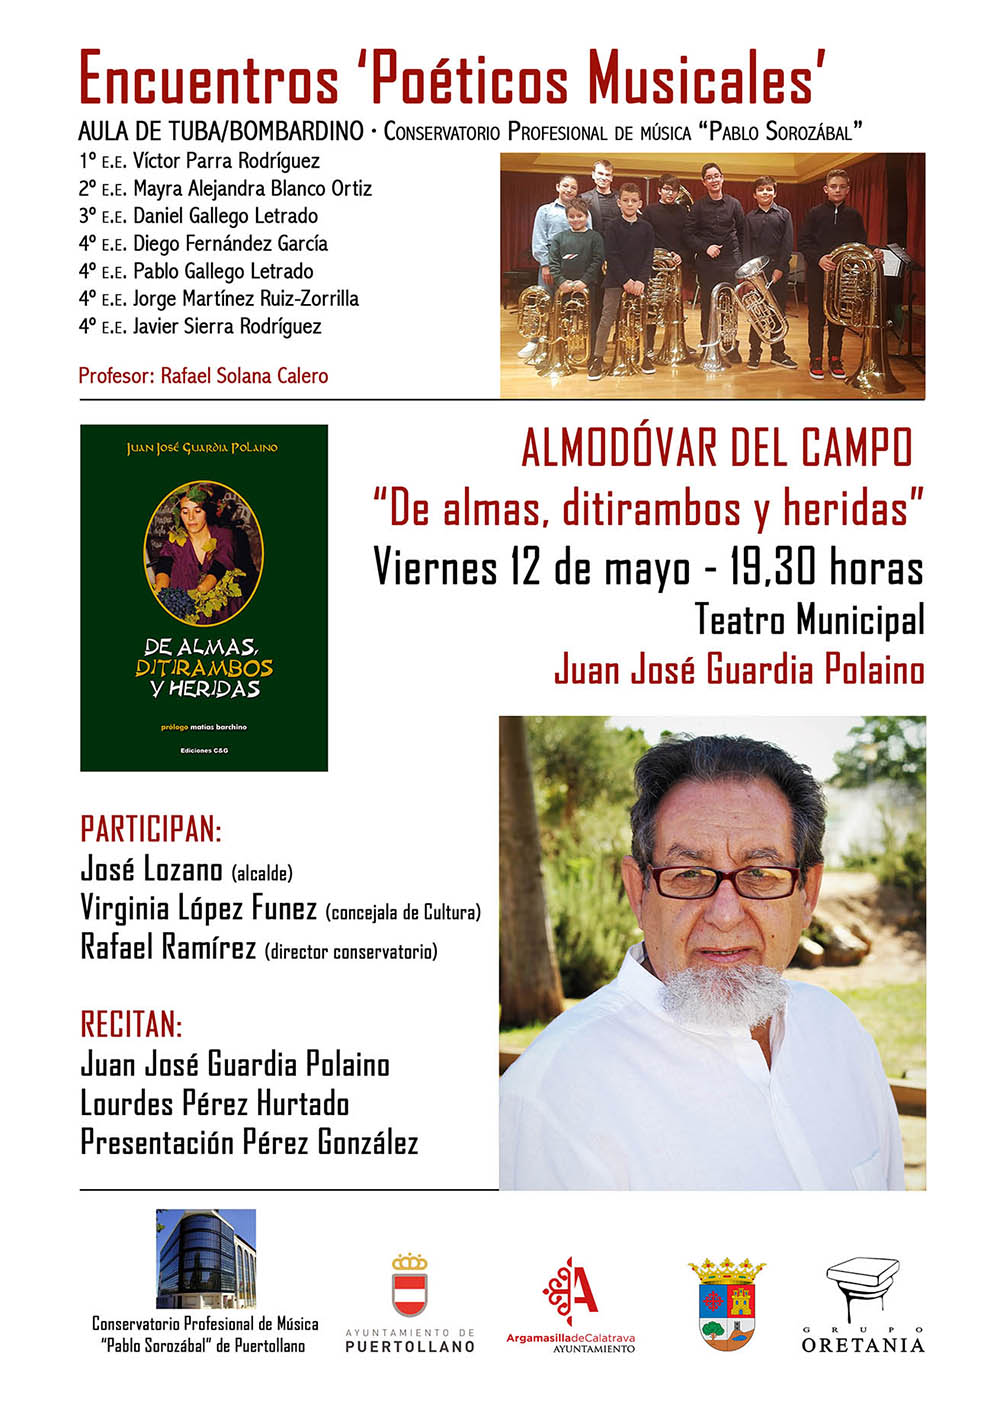 Cartel del encuentro poético musical en Almodóvar del Campo